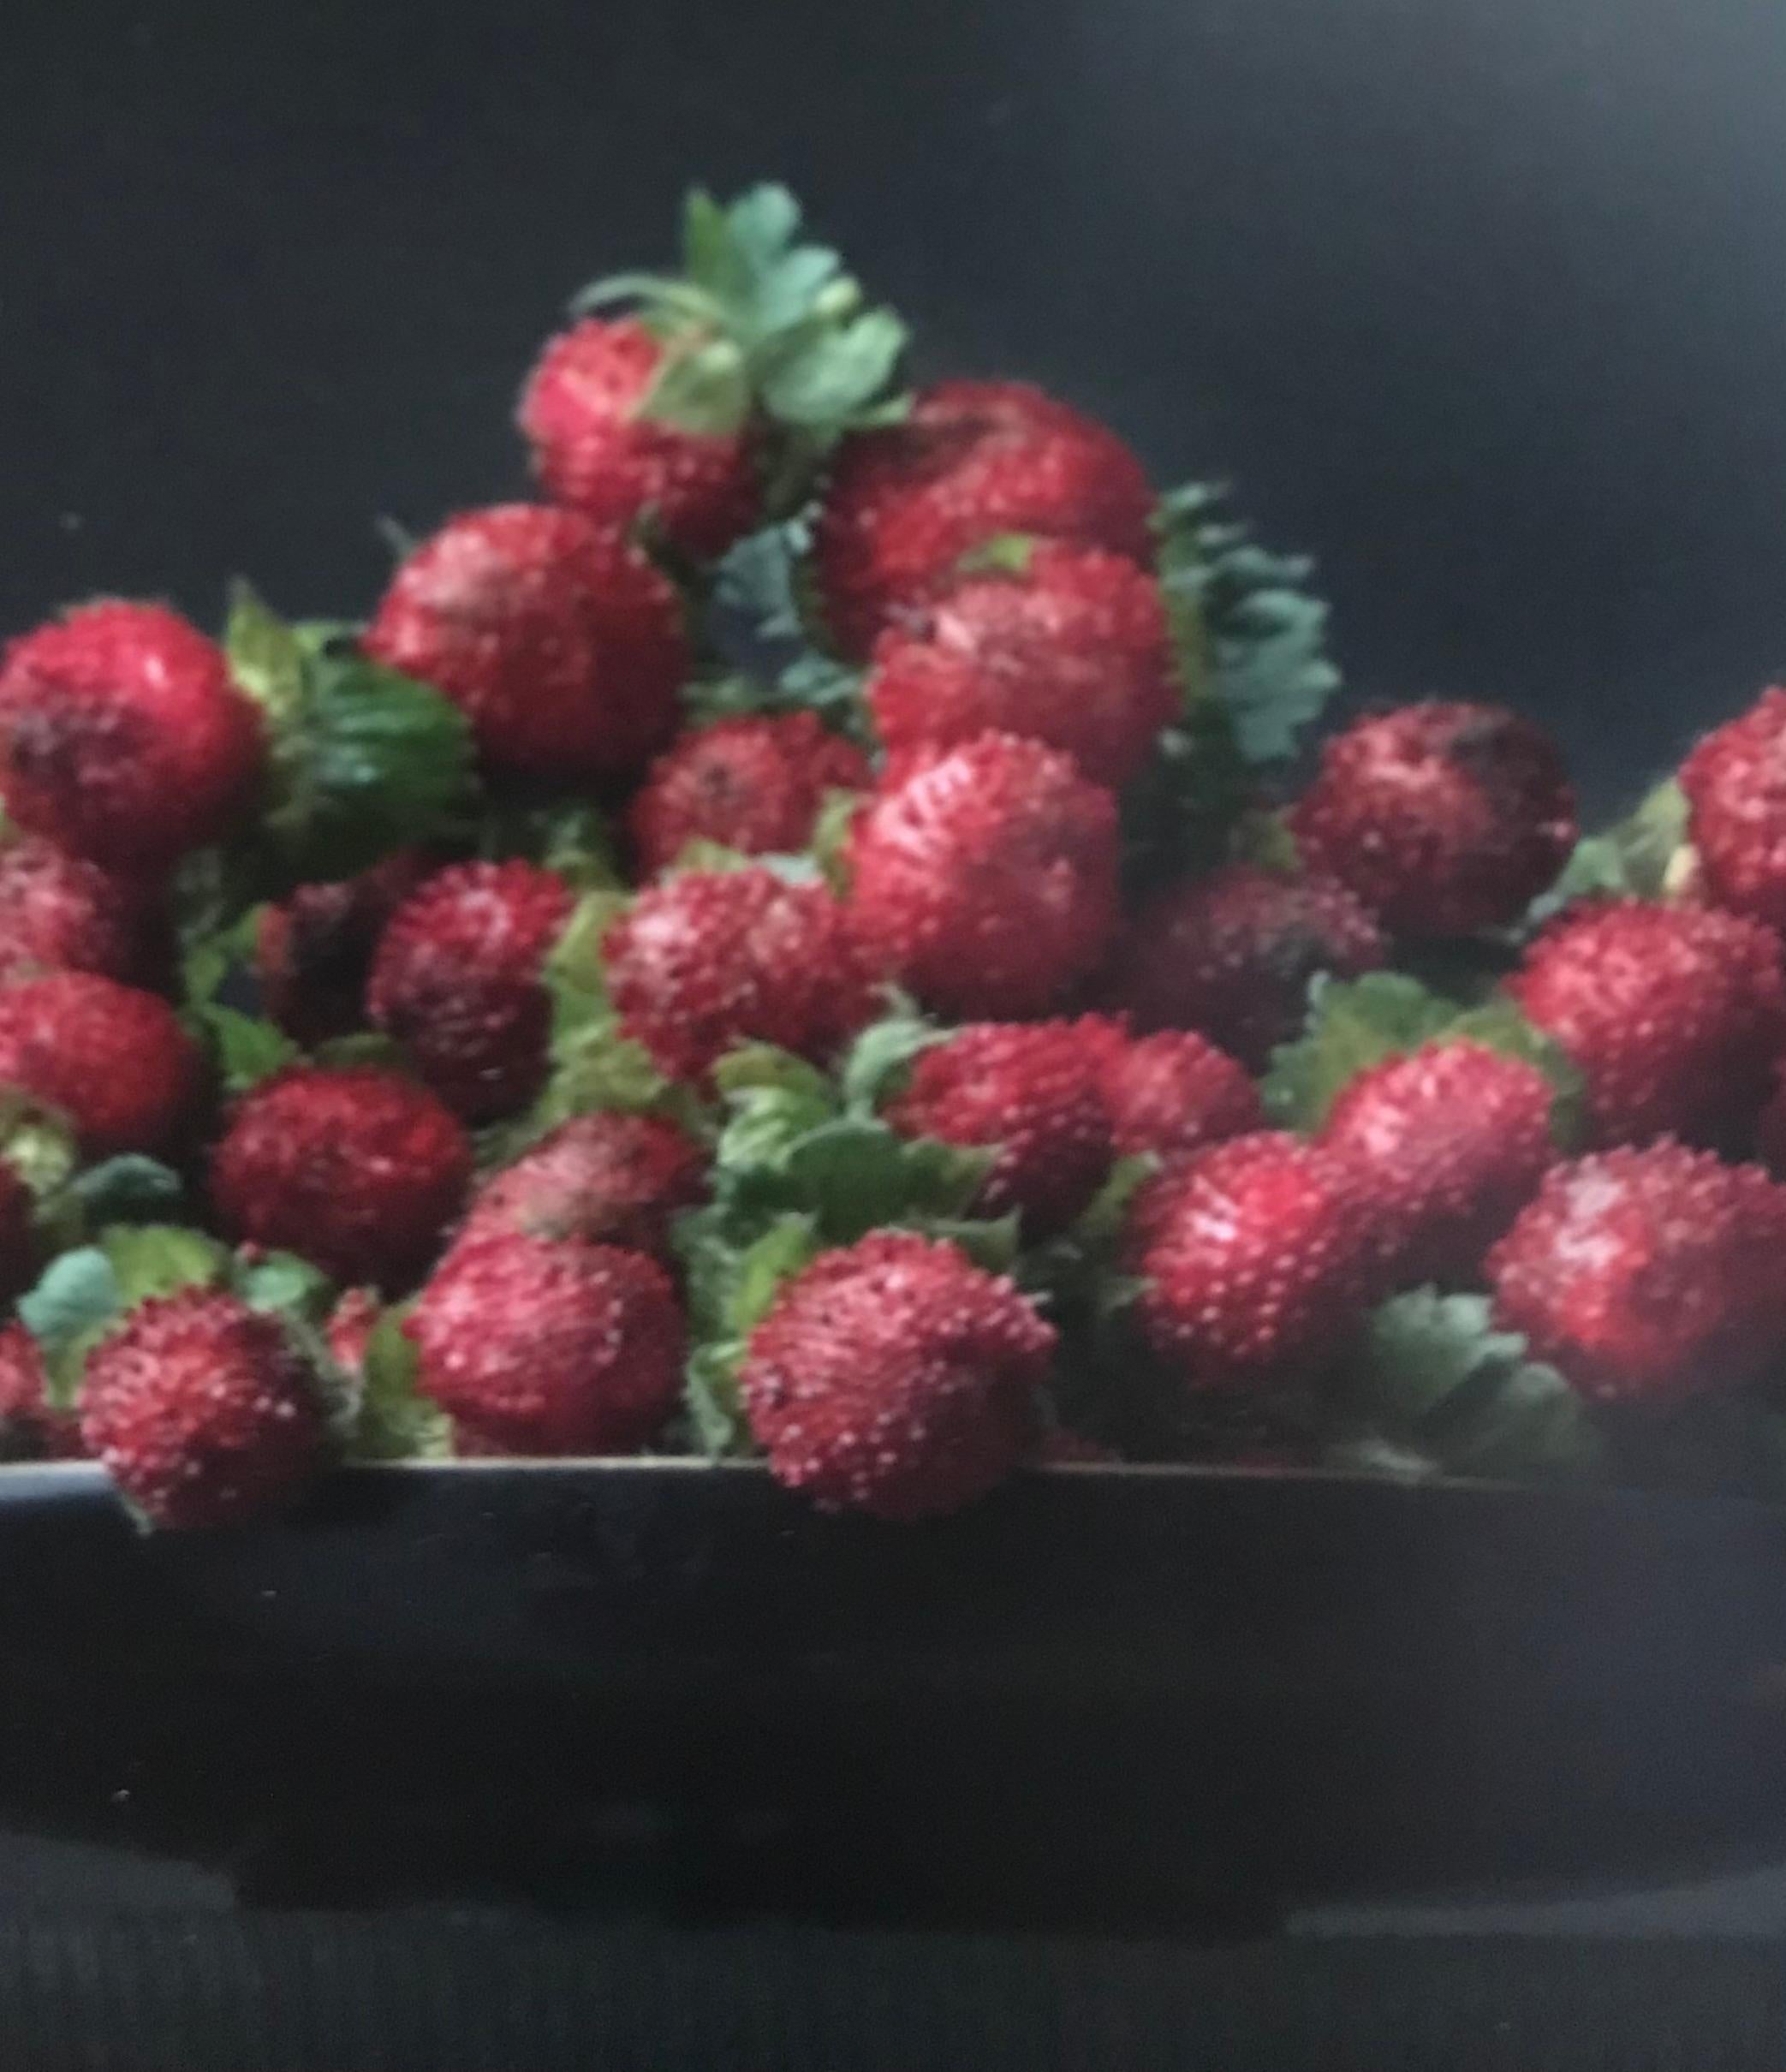 Strawberry's'' Dutch Contemporary Stilleben von Erdbeeren in einer schwarzen Schale (Zeitgenössisch), Photograph, von Ursula van de Bunte